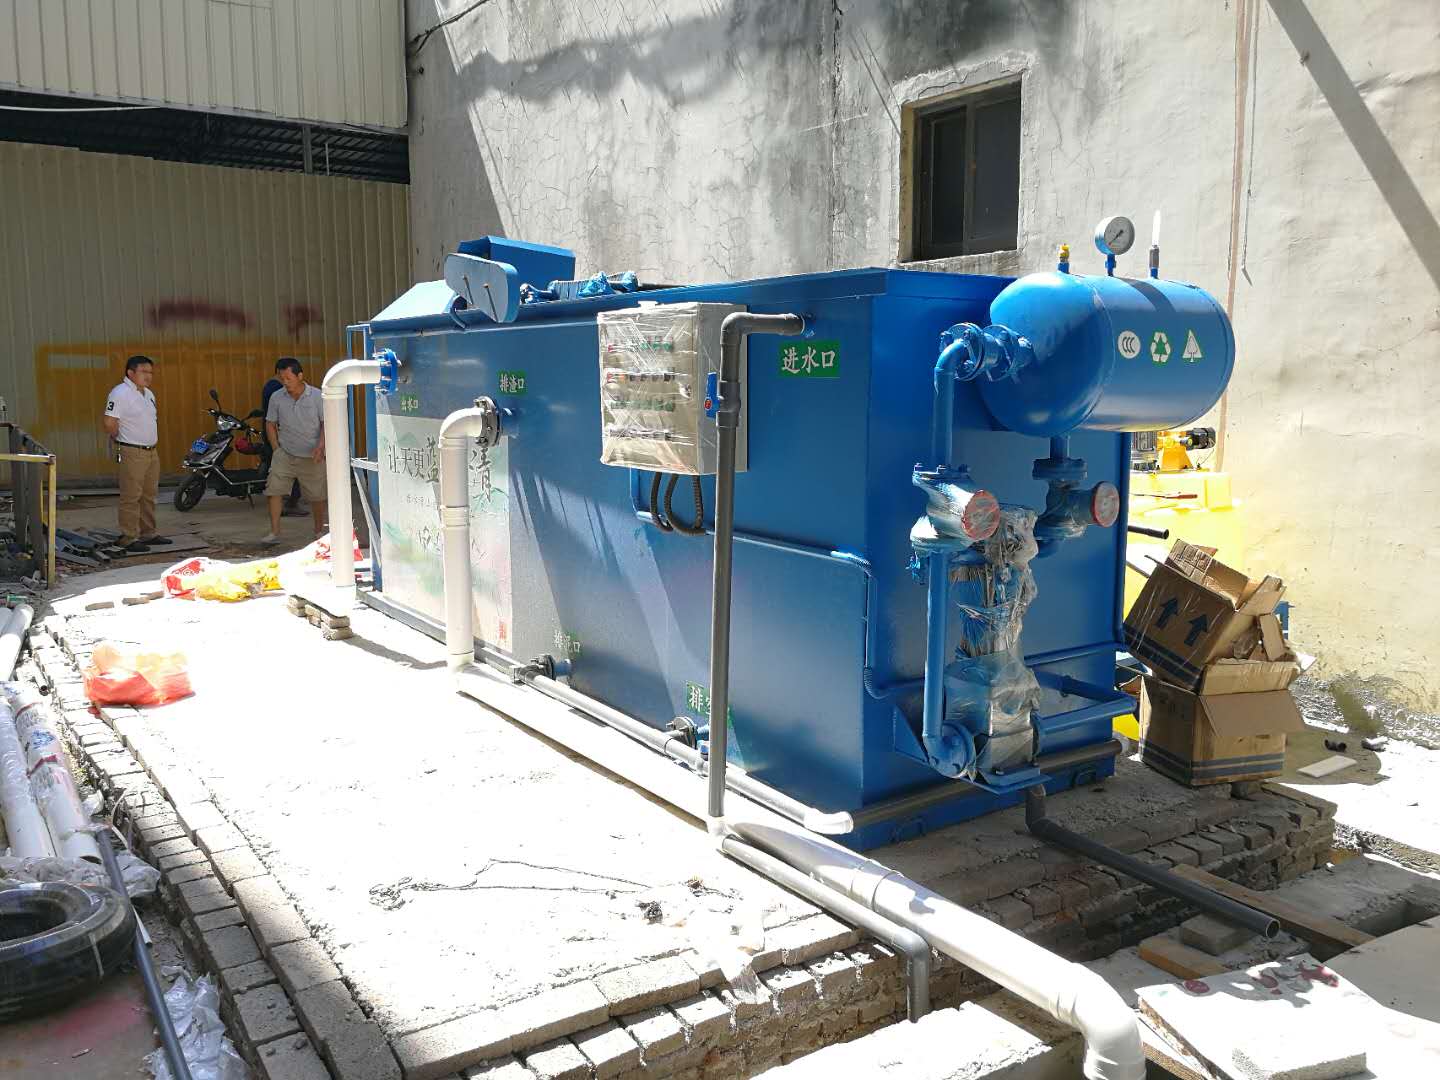 海口秀英豆制品加工厂10吨/d一体化污水处理设备